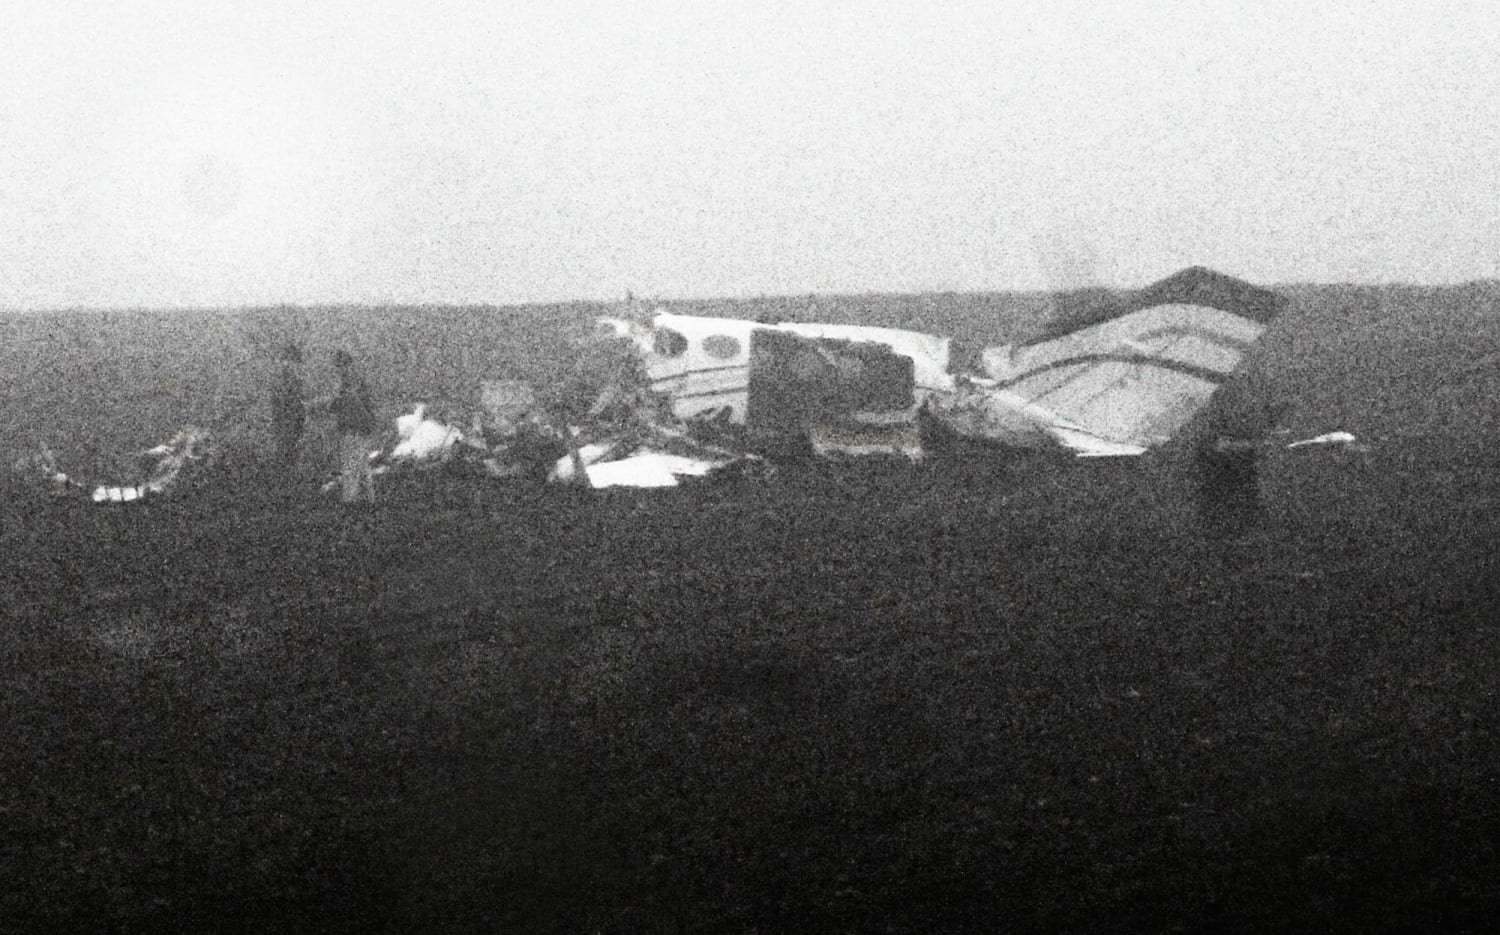 Самолет упал на детский сад в 1972. Светлогорск детский сад катастрофа 1972. Катастрофа АН-24 В Светлогорске. Катастрофа АН-24 В Светлогорске фото. Военный самолёт упал на детский сад в 1972 году.